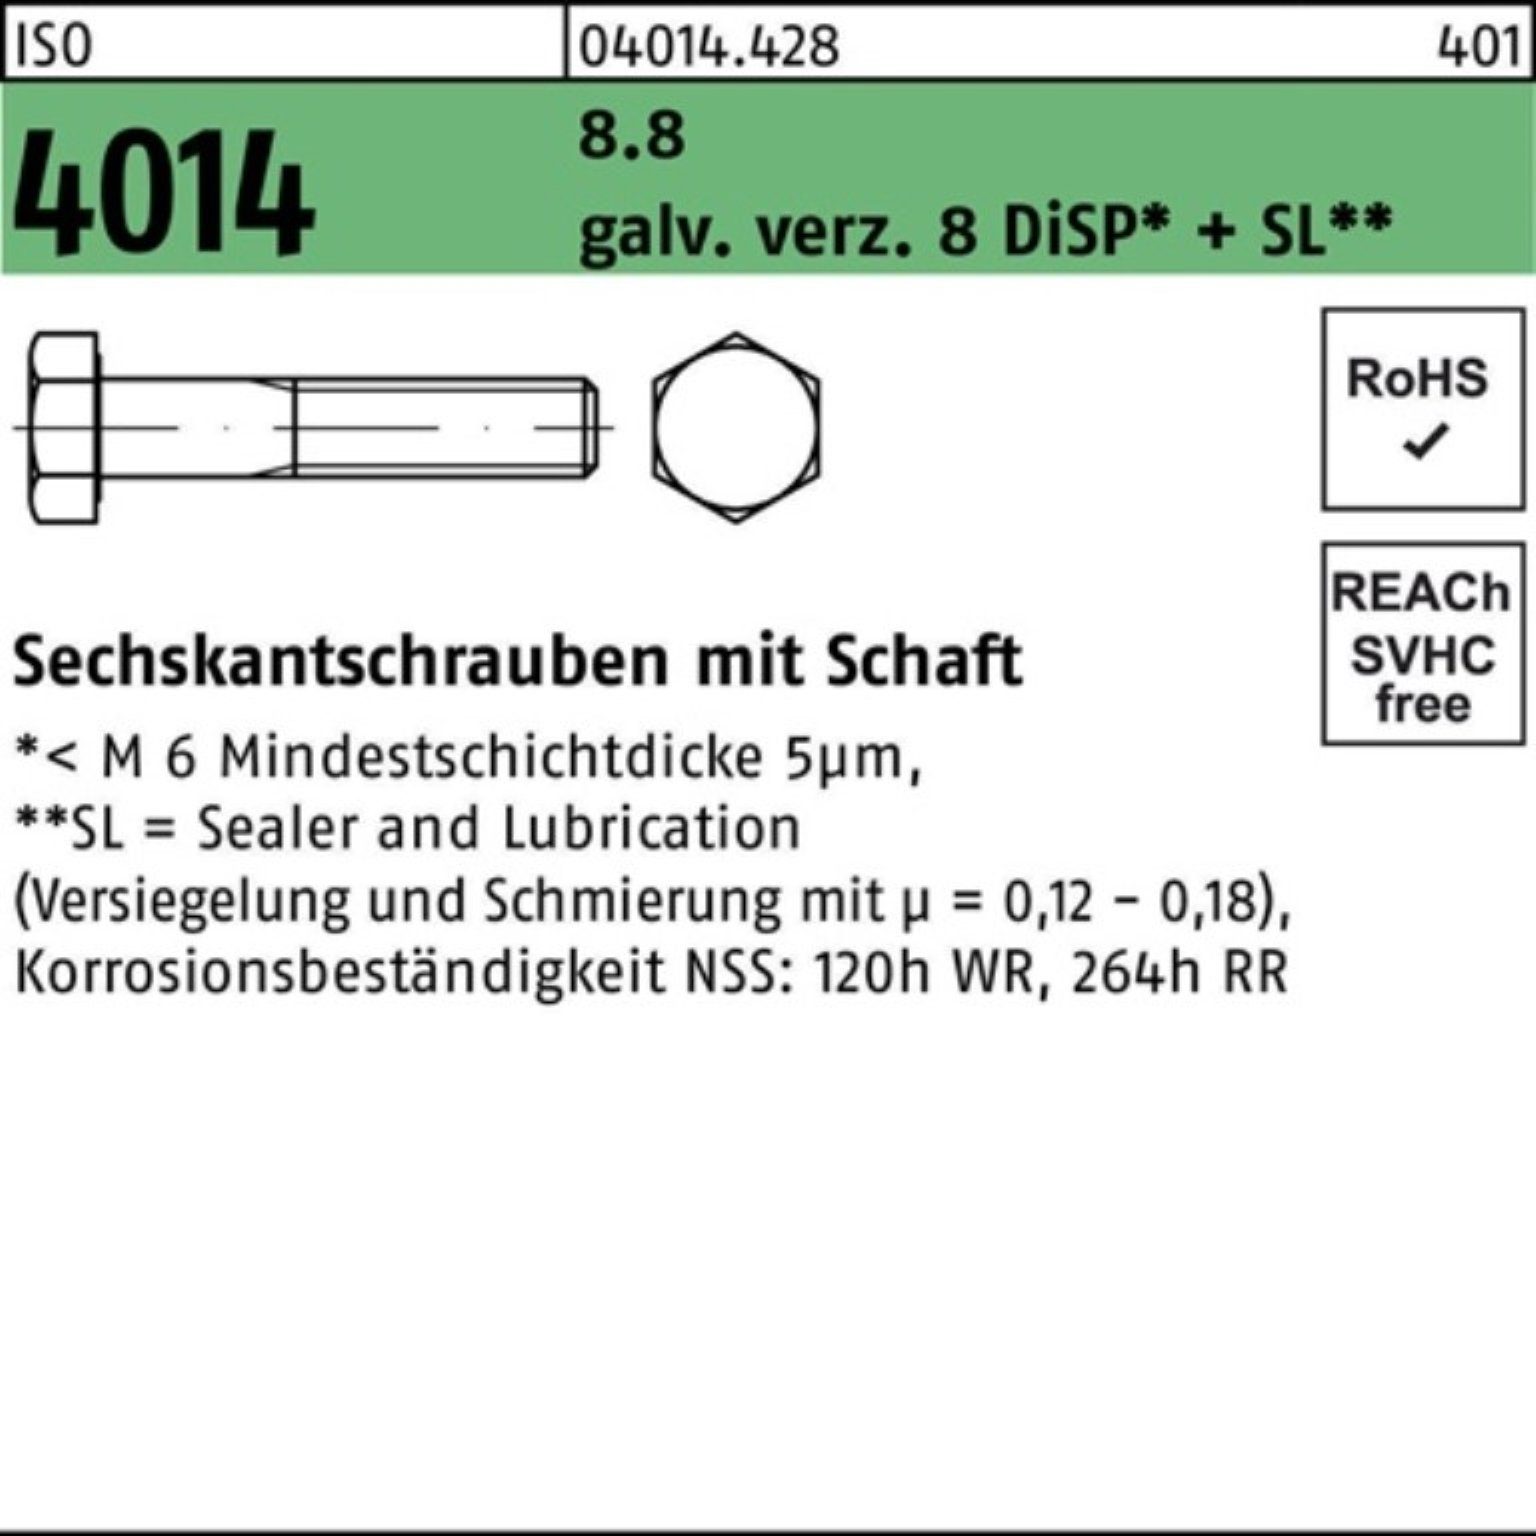 Bufab Sechskantschraube 100er Pack Sechskantschraube ISO 4014 Schaft M20x220 8.8 galv.verz. 8